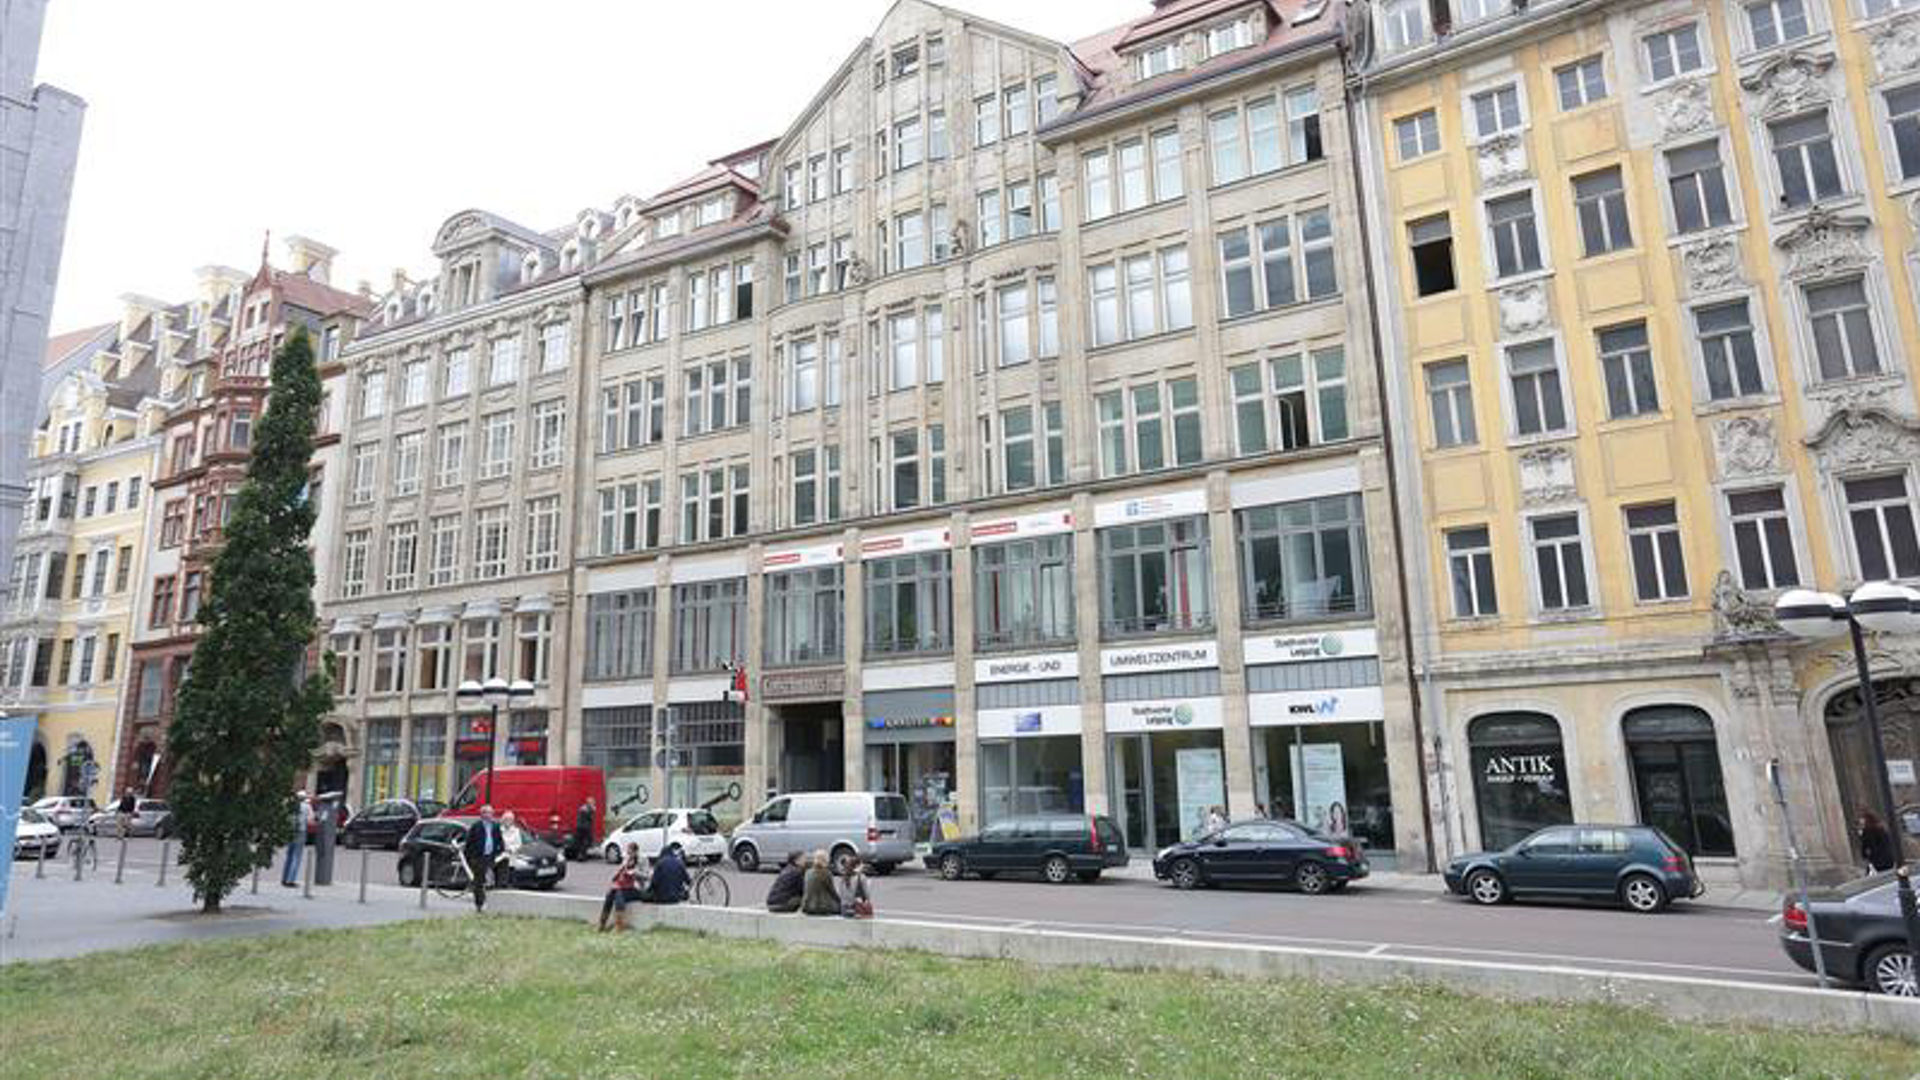 Gebäude der FOM in Leipzig, die zur virtuellen langen Nacht der Wissenschaft einlud